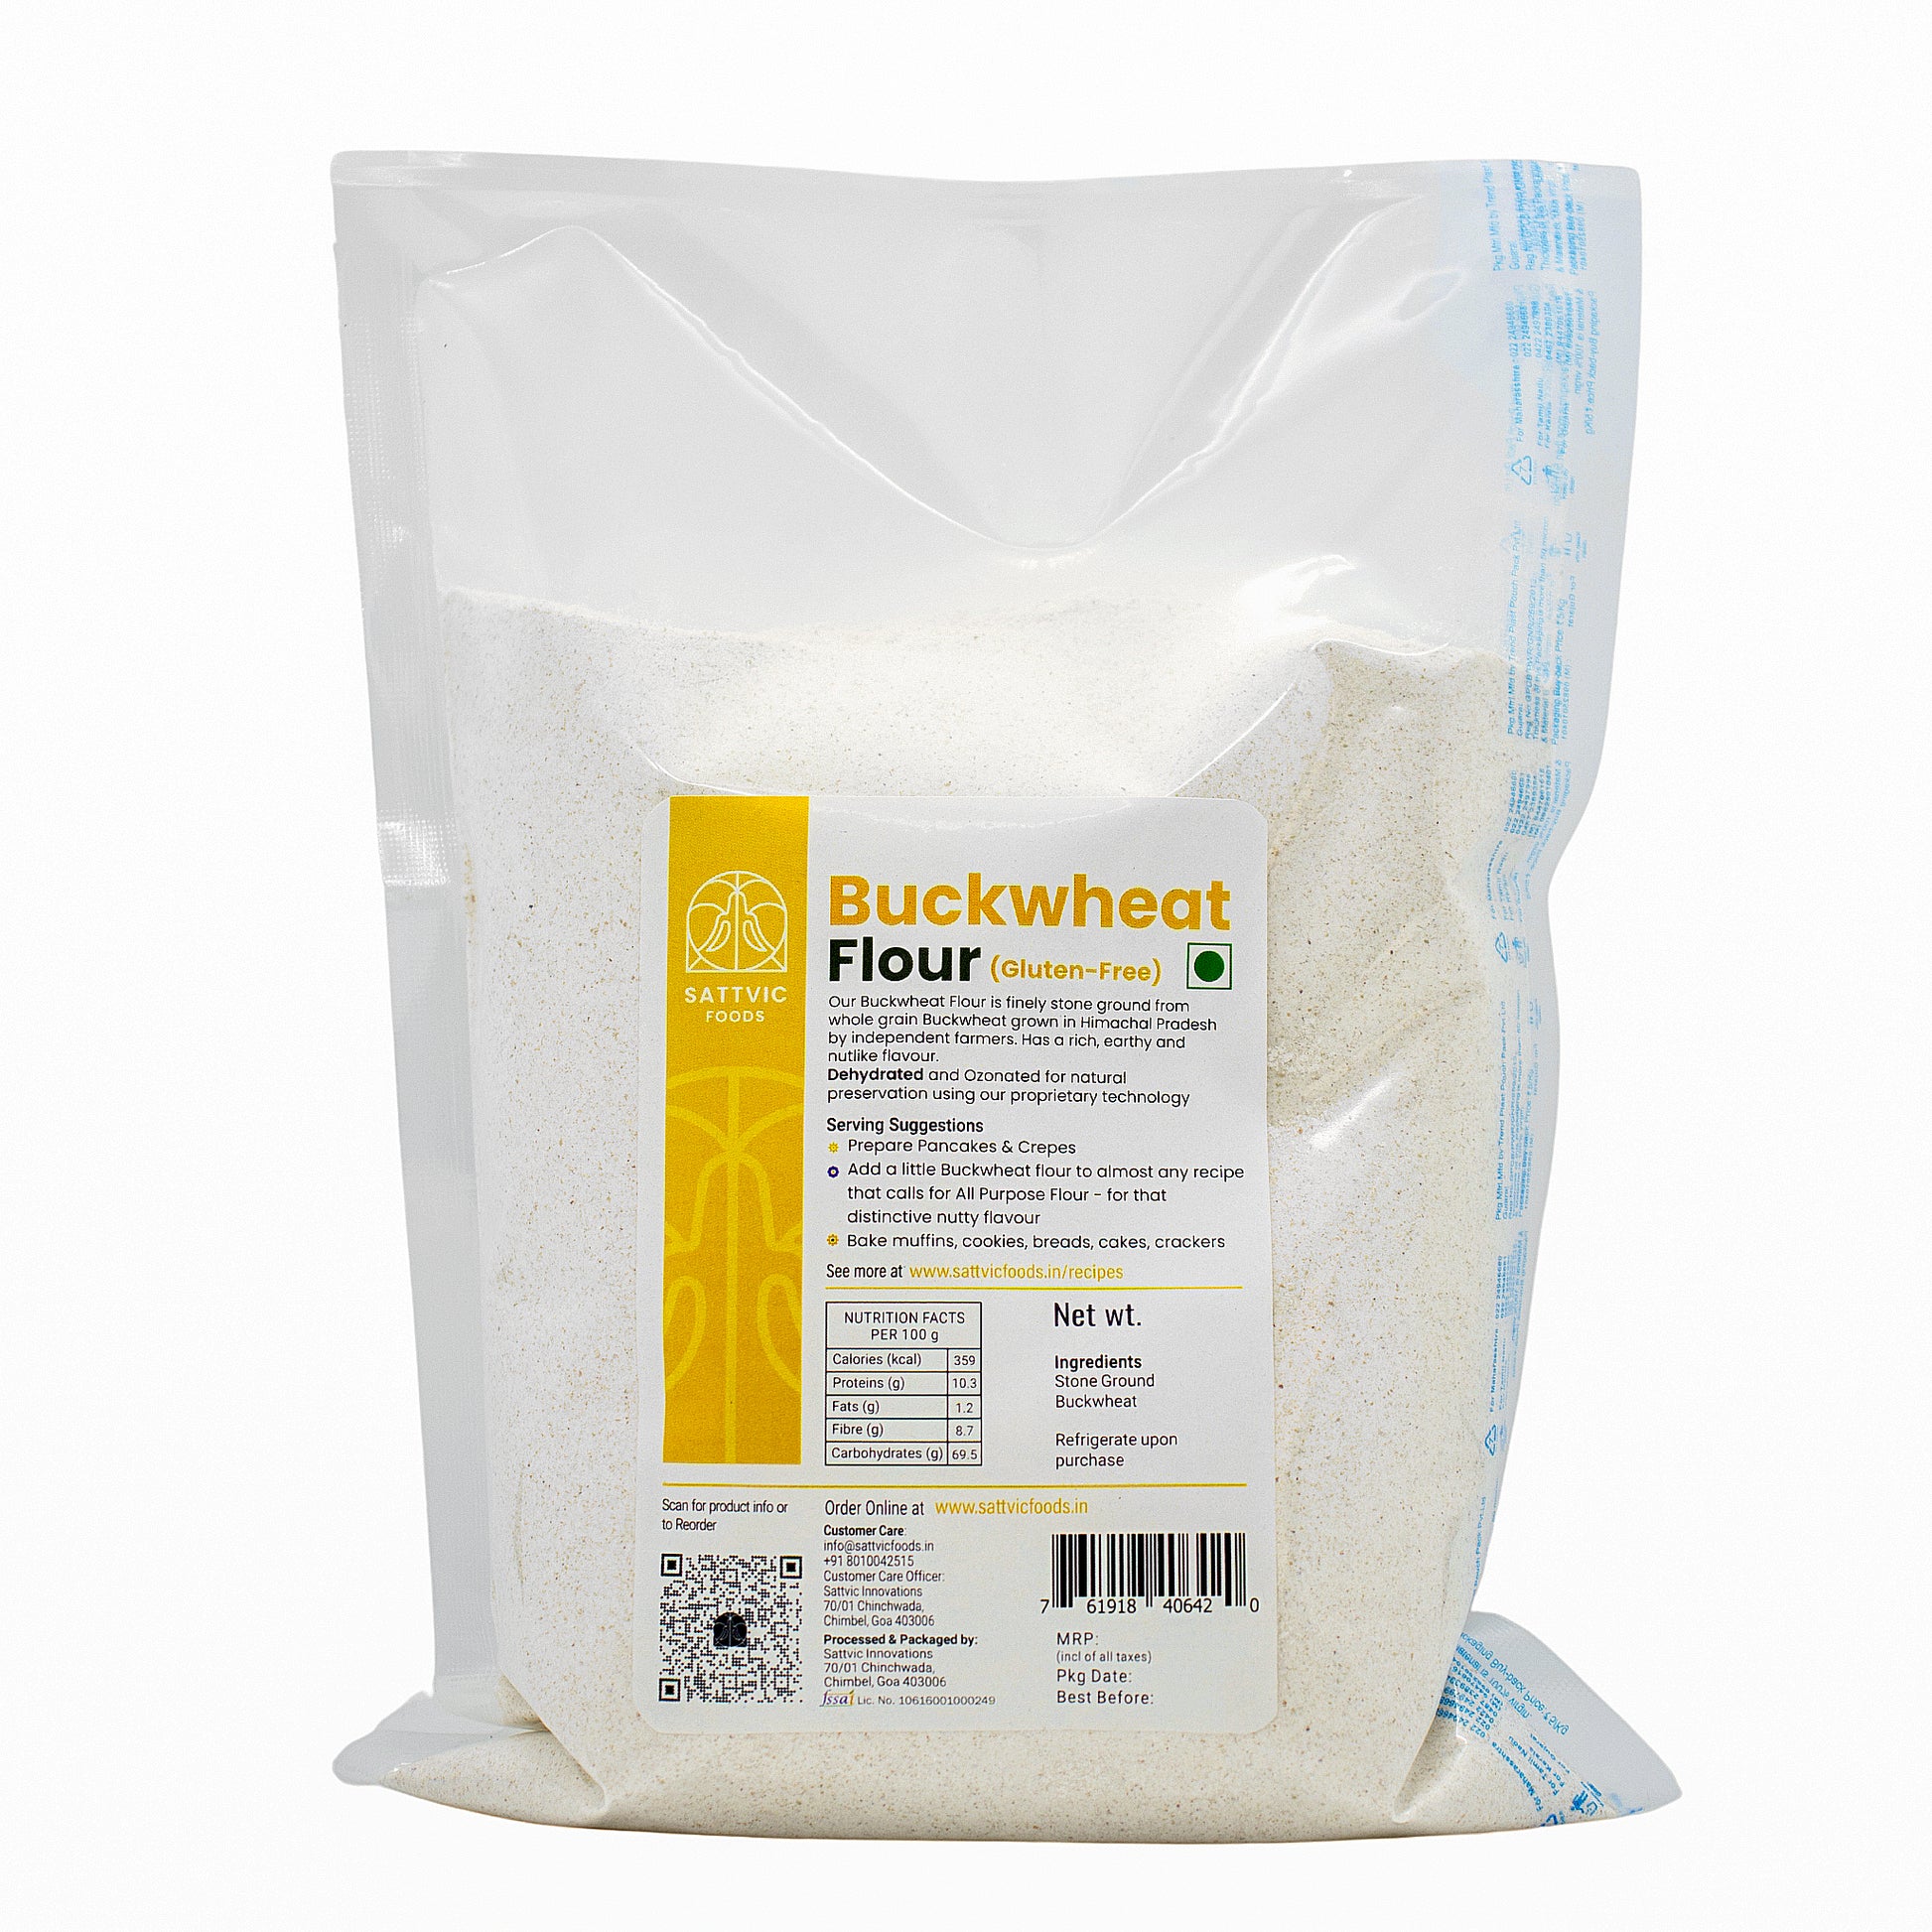 Buckwheat Flour (Gluten-free)